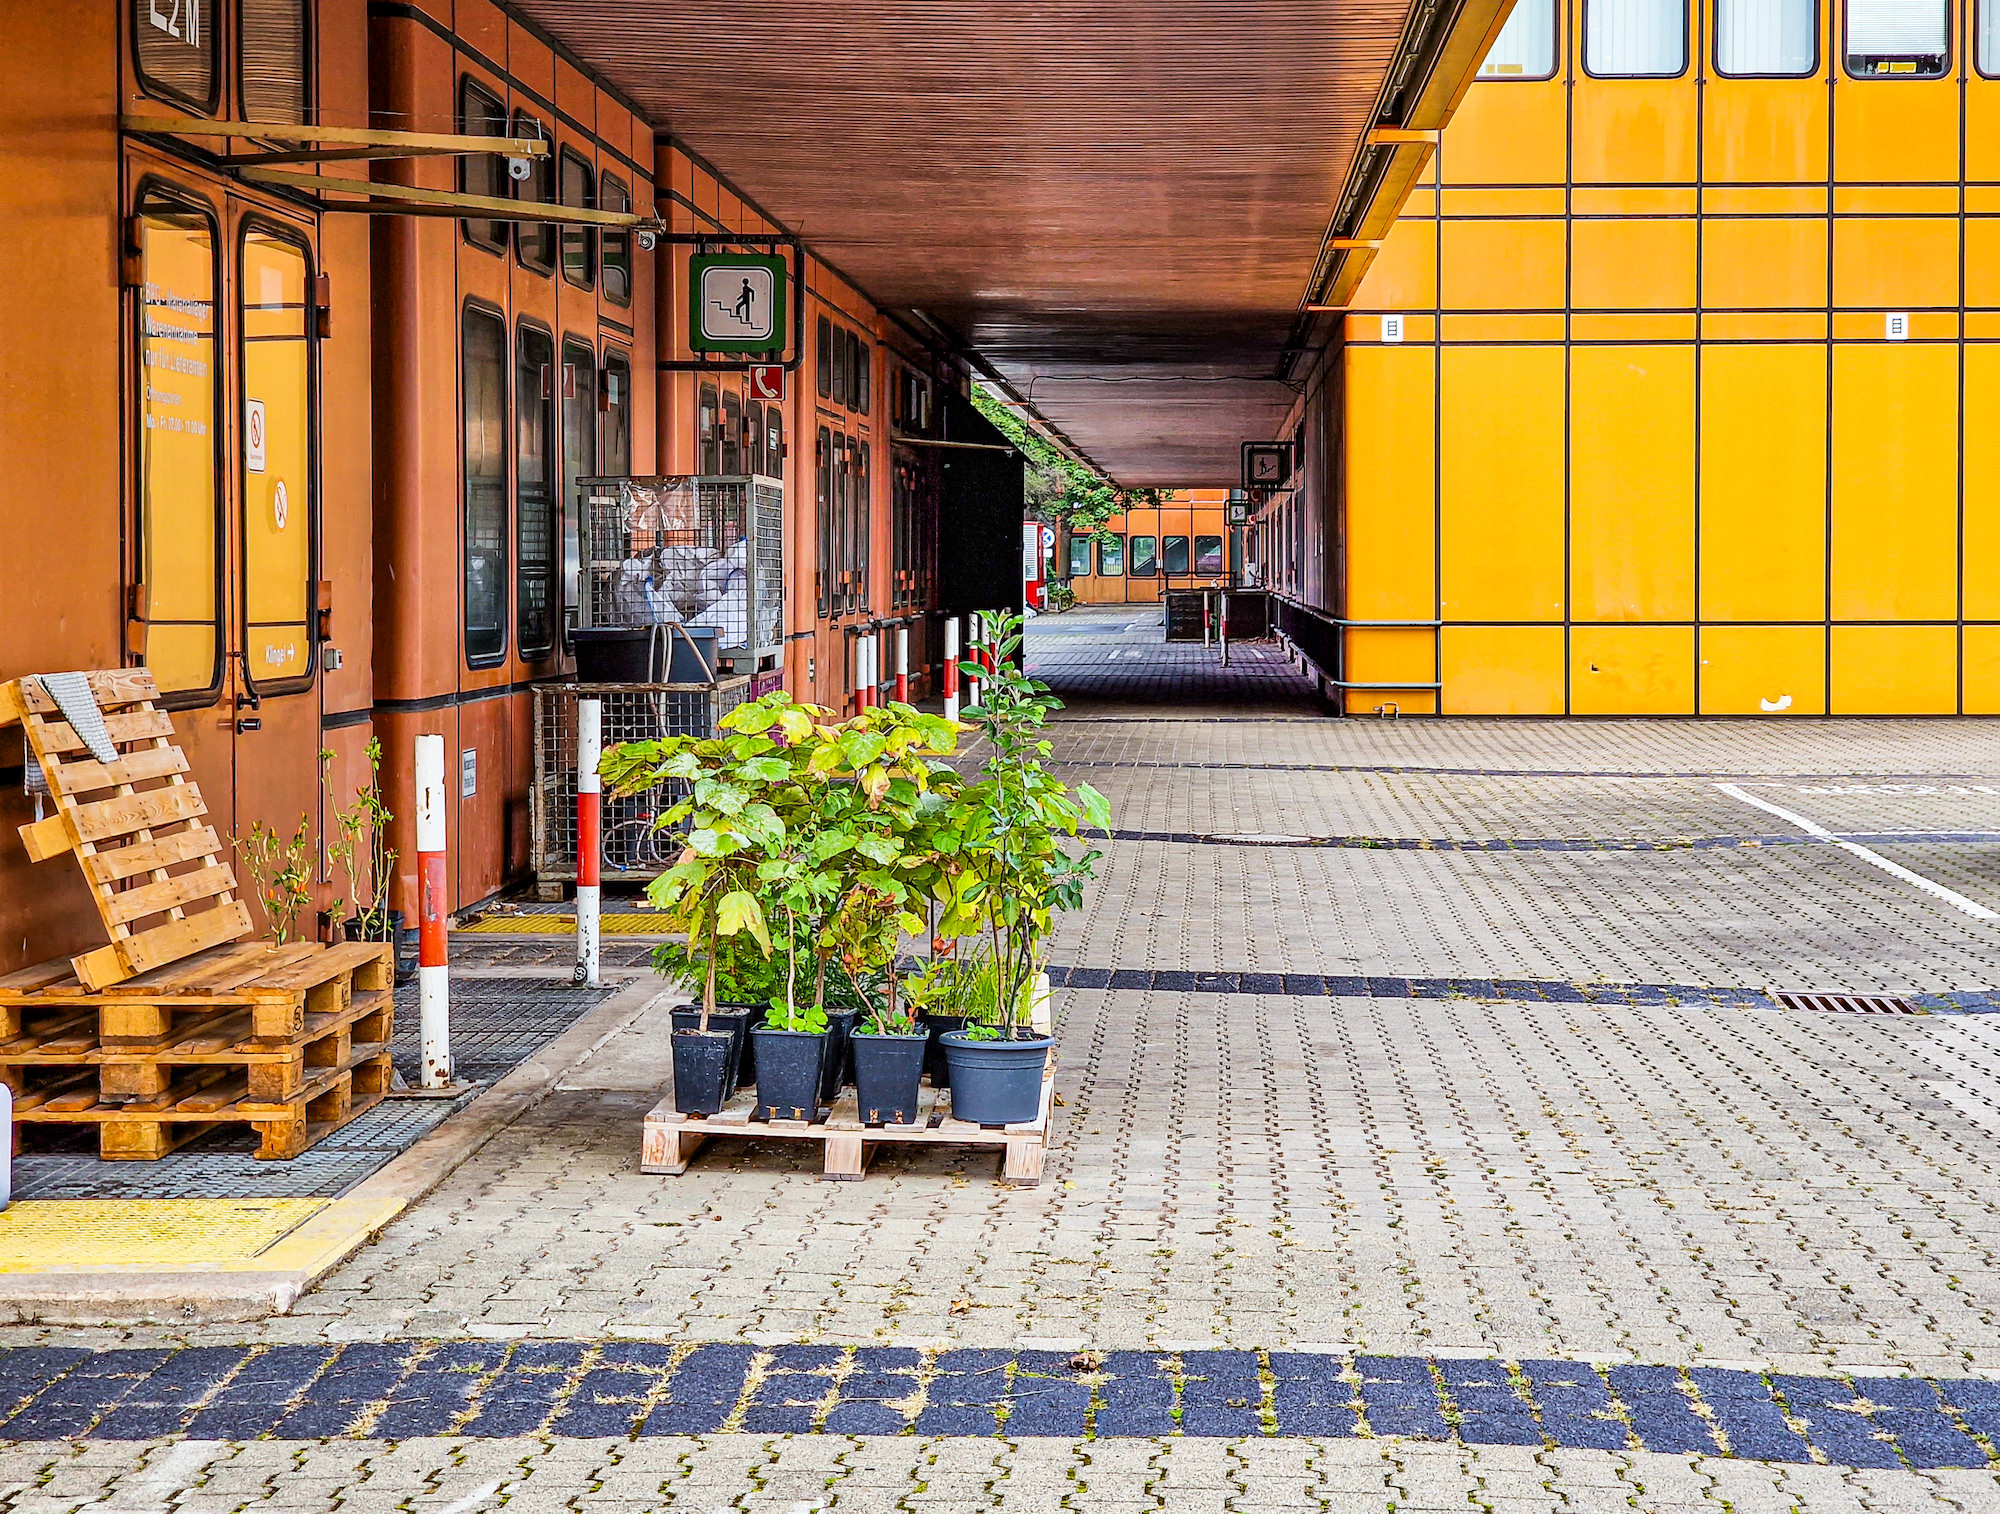 Europalette Grünpflanzen vor dem orangenen Gebäude